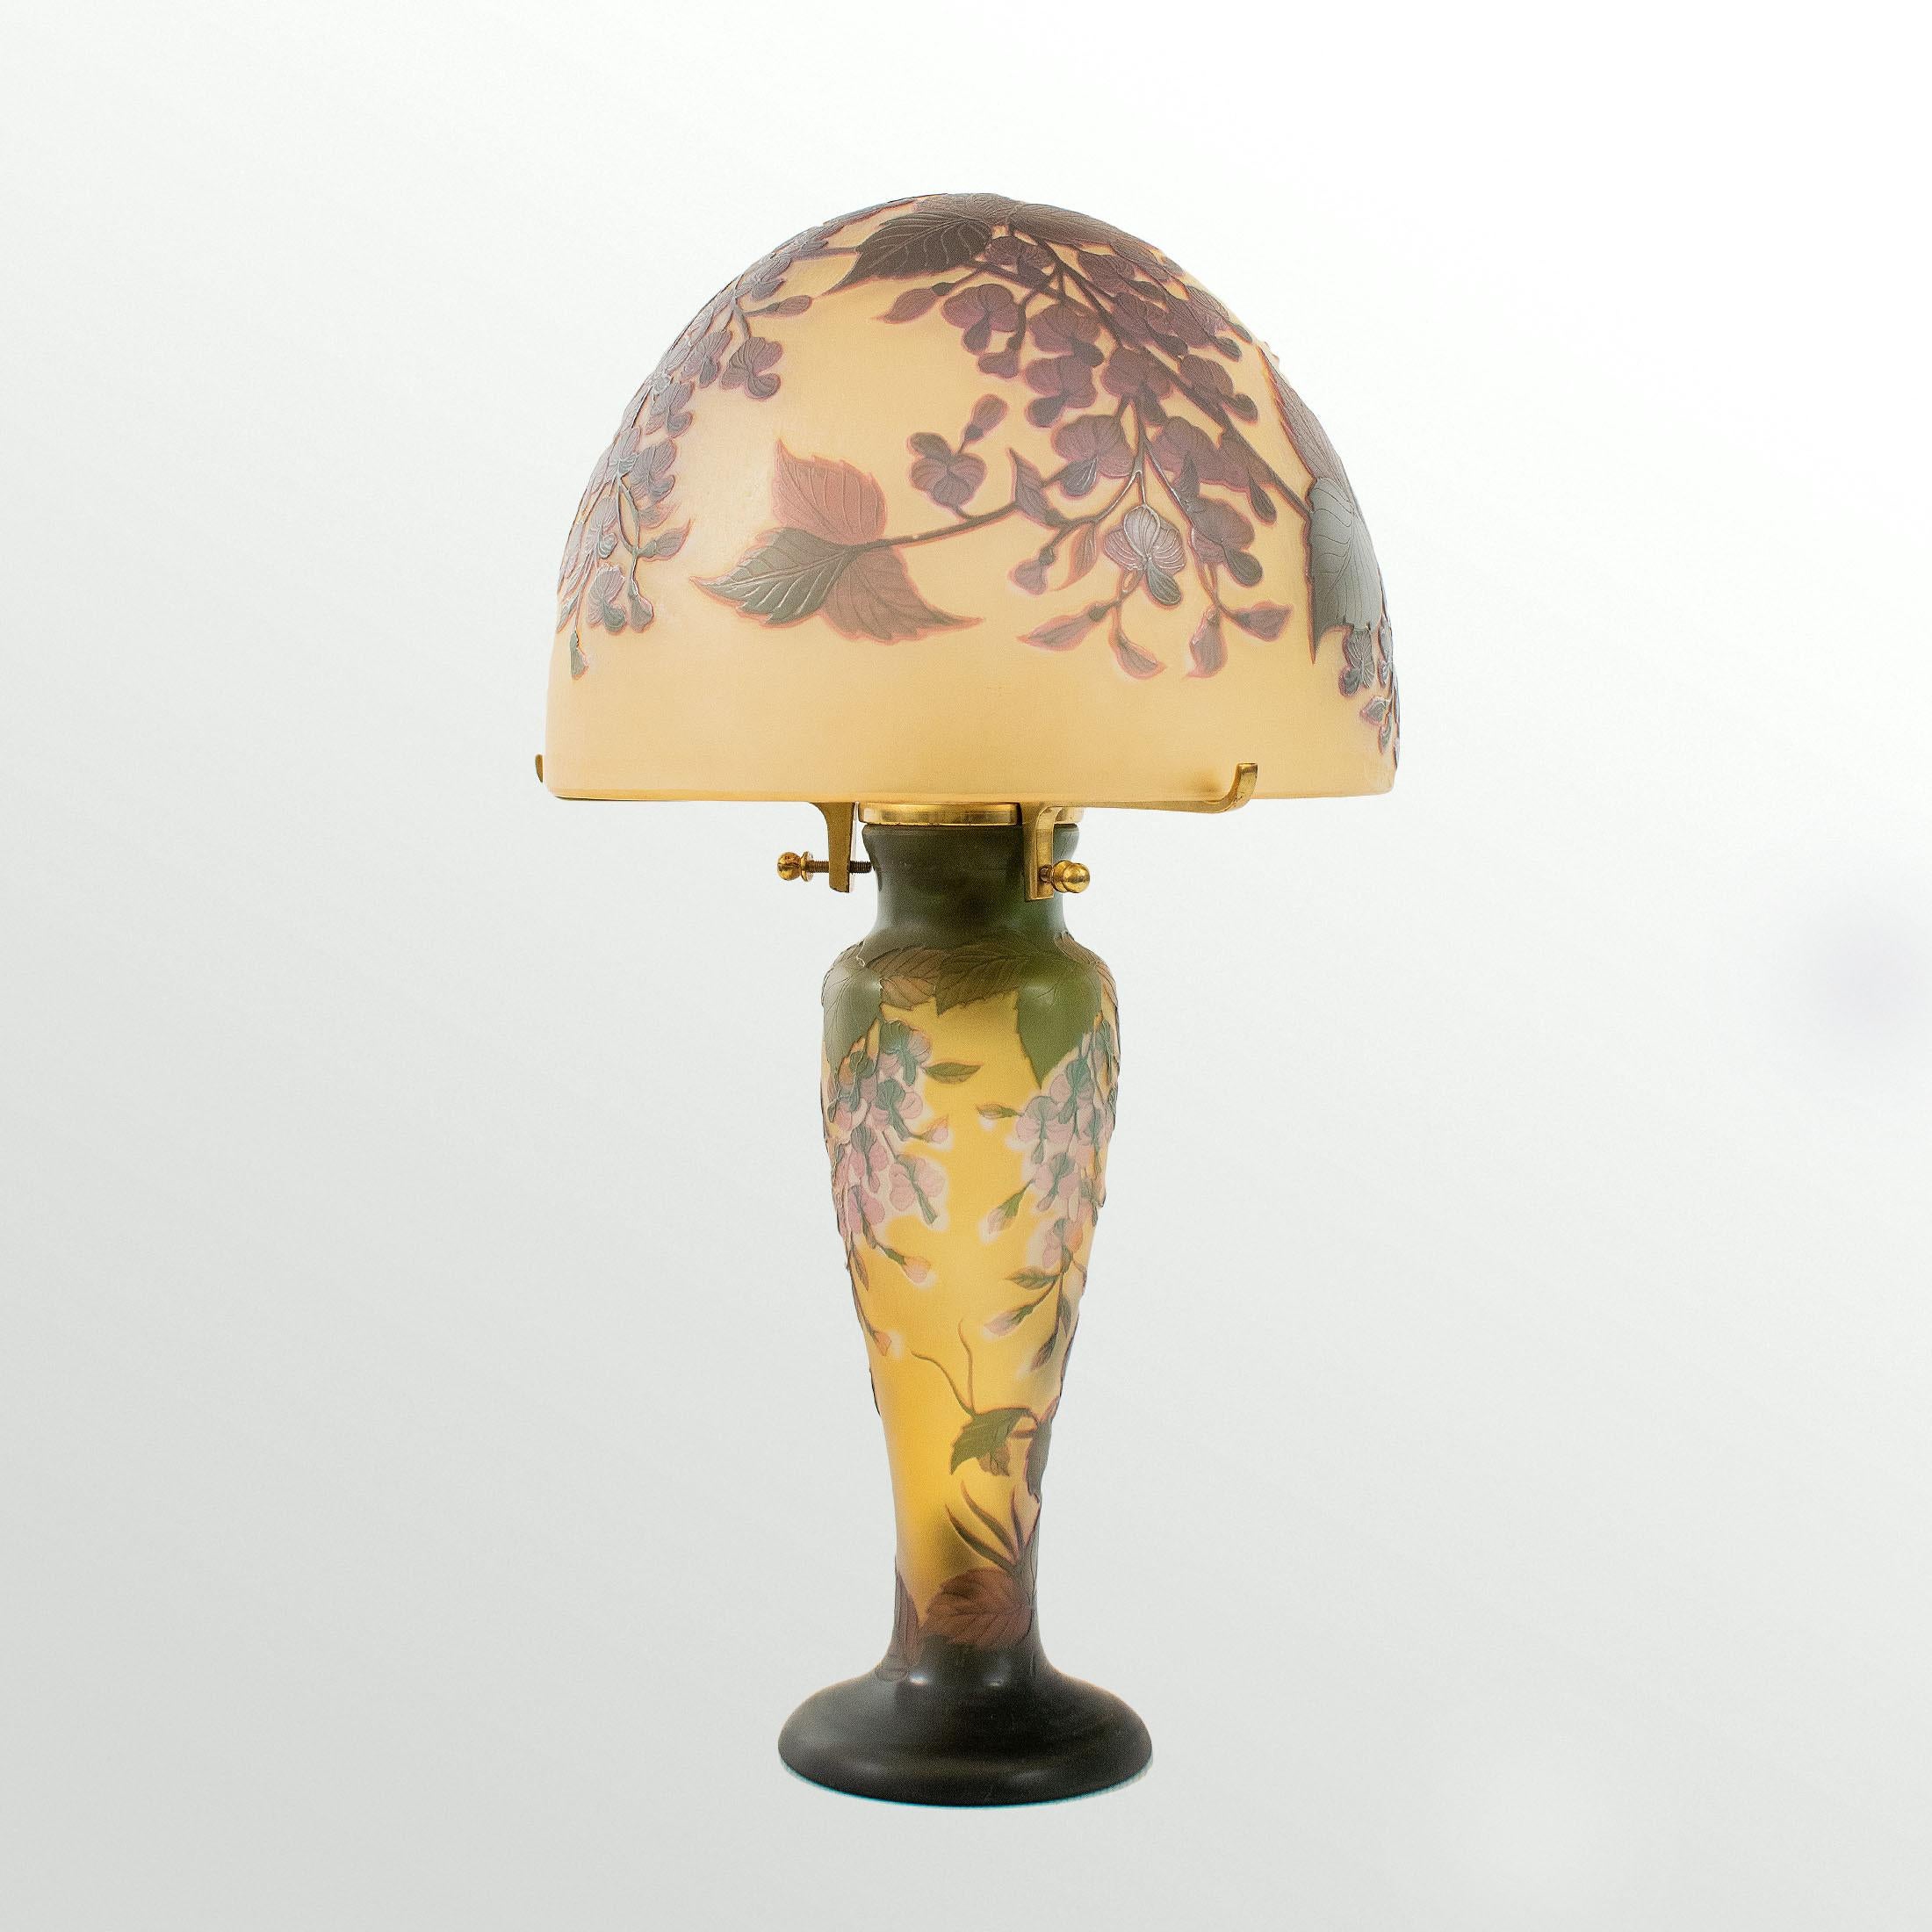 French GALLÉ Tip - Elegant Art Nouveau mushroom lamp in acid-etched glass.